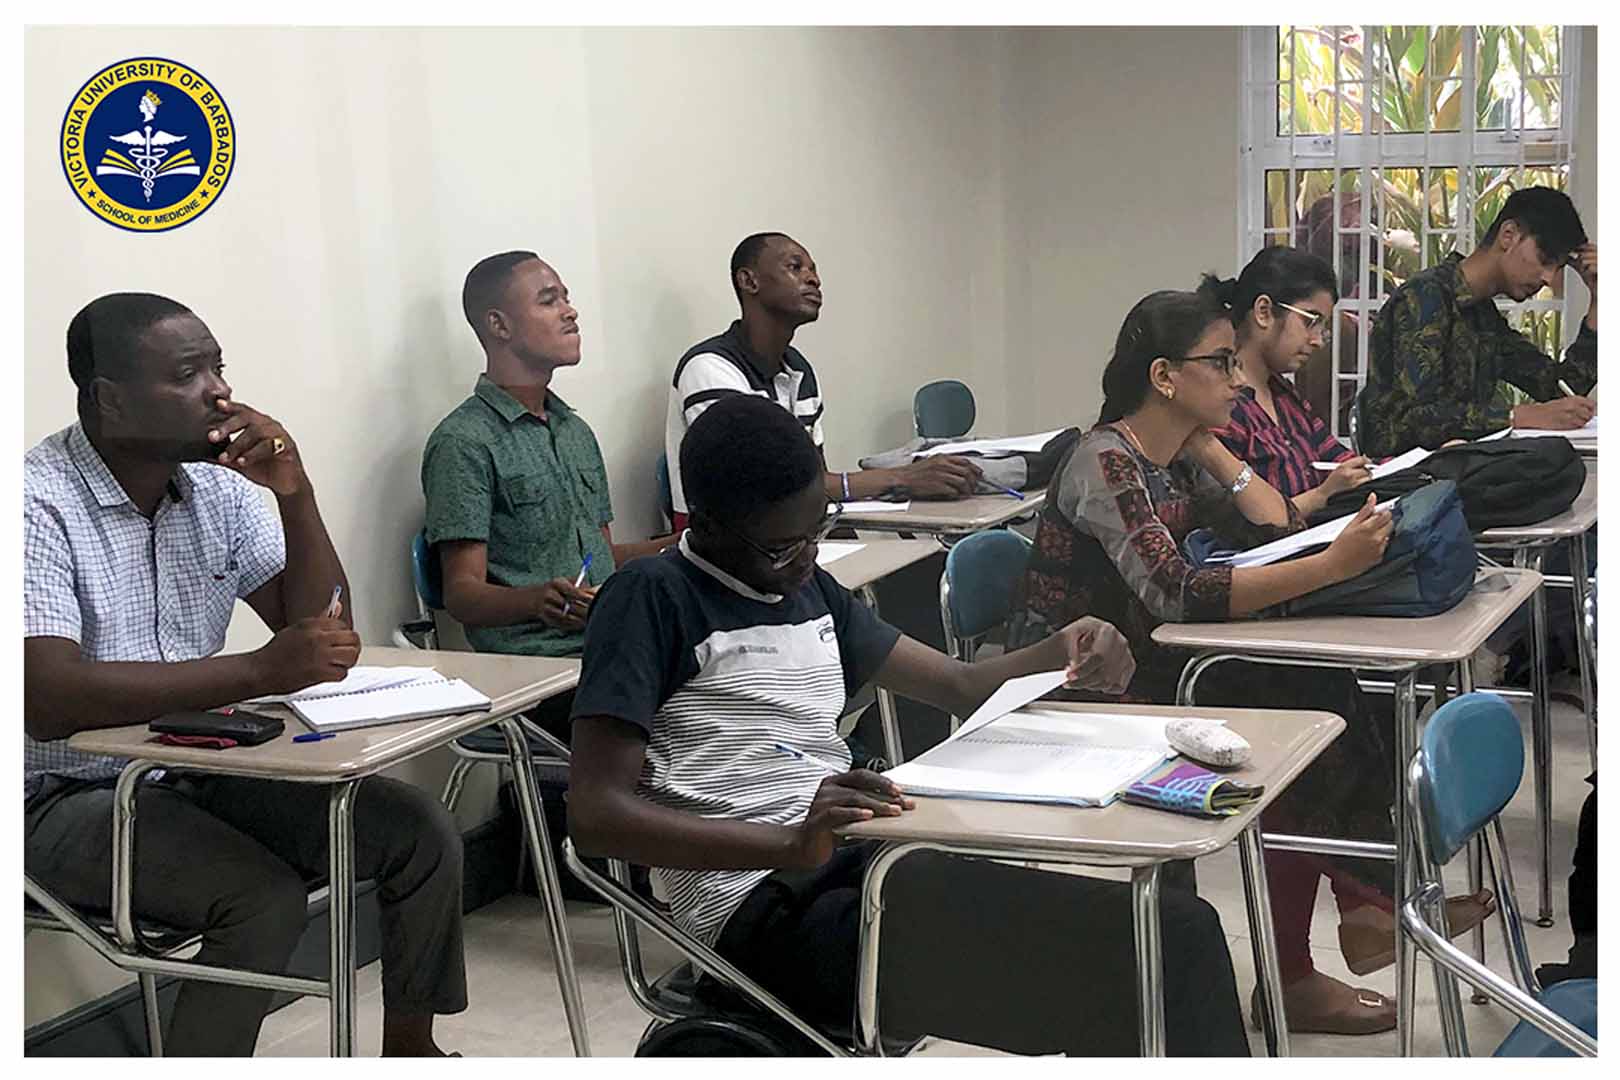 Victoria University of Barbados - MD in Barbados - MD Program Nov 2019 - 04